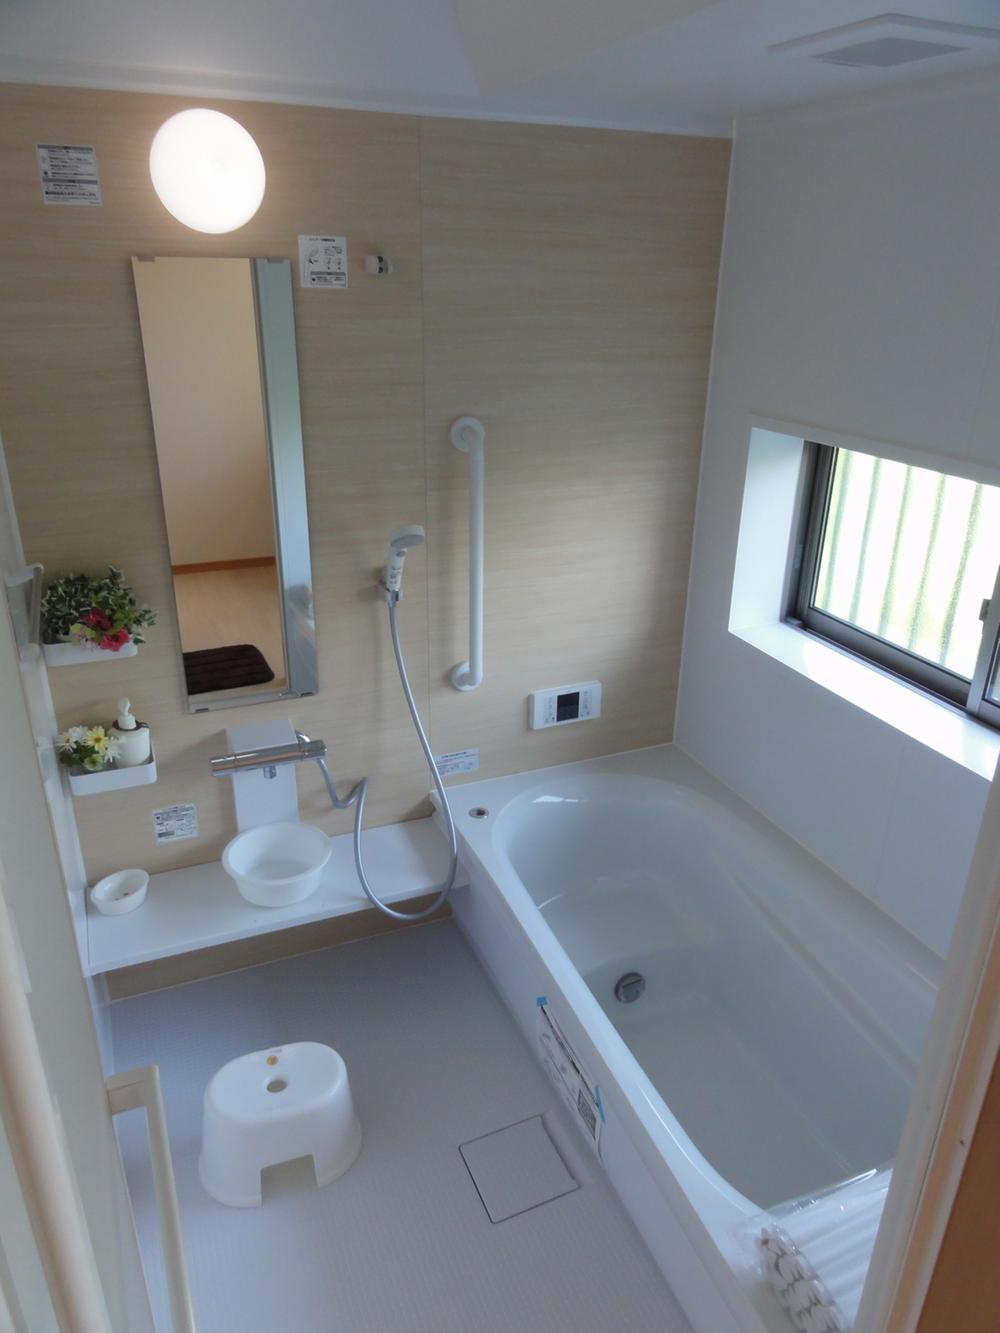 Bathroom. Example of construction   1 pyeong type You can sitz bath